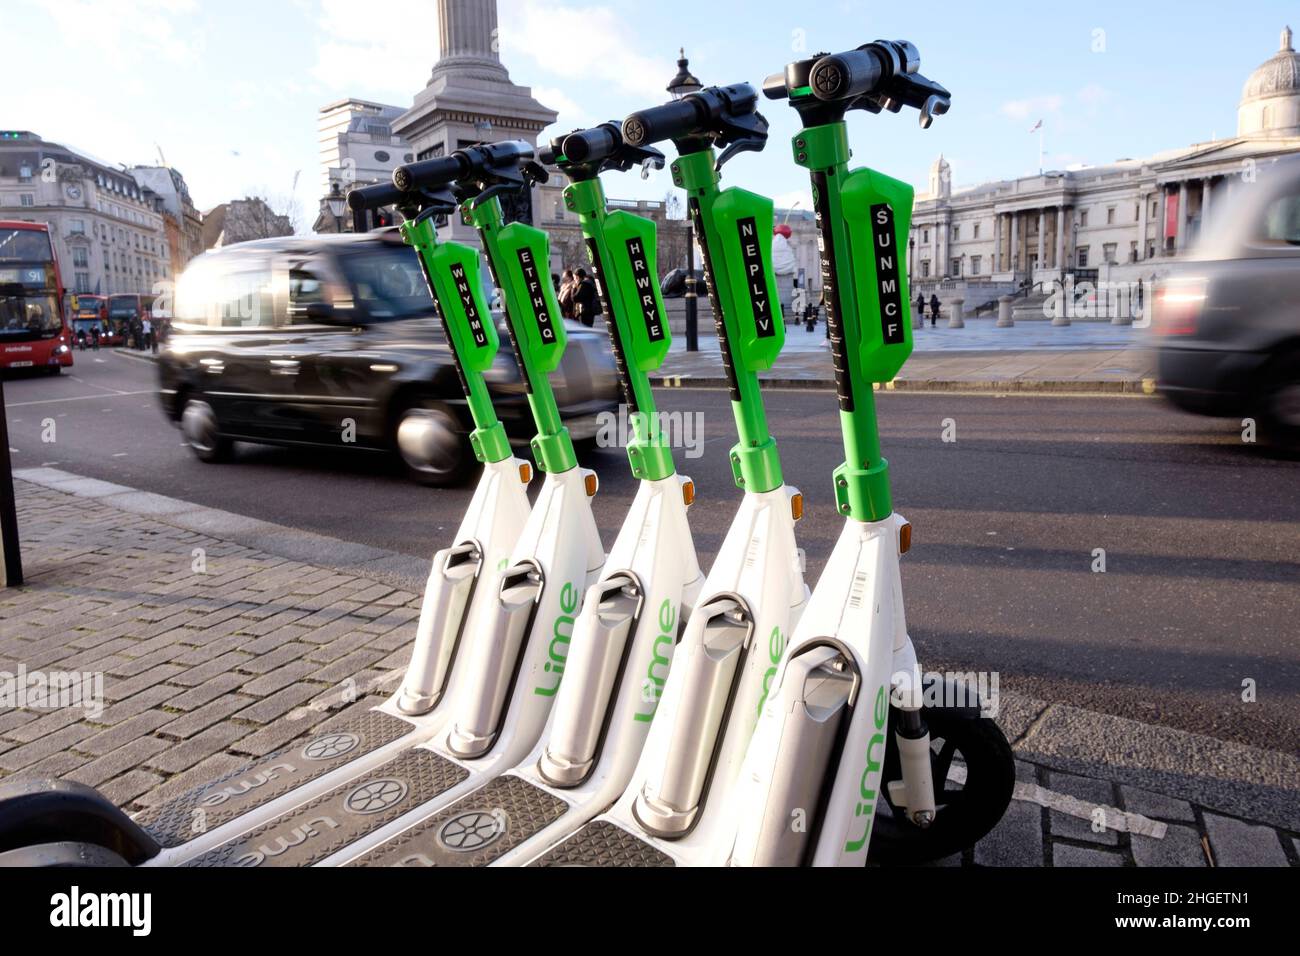 Los vehículos pasan una fila de scooters eléctricos para alquilar estacionados en la bahía dedicada, en el centro de Londres, Reino Unido Foto de stock